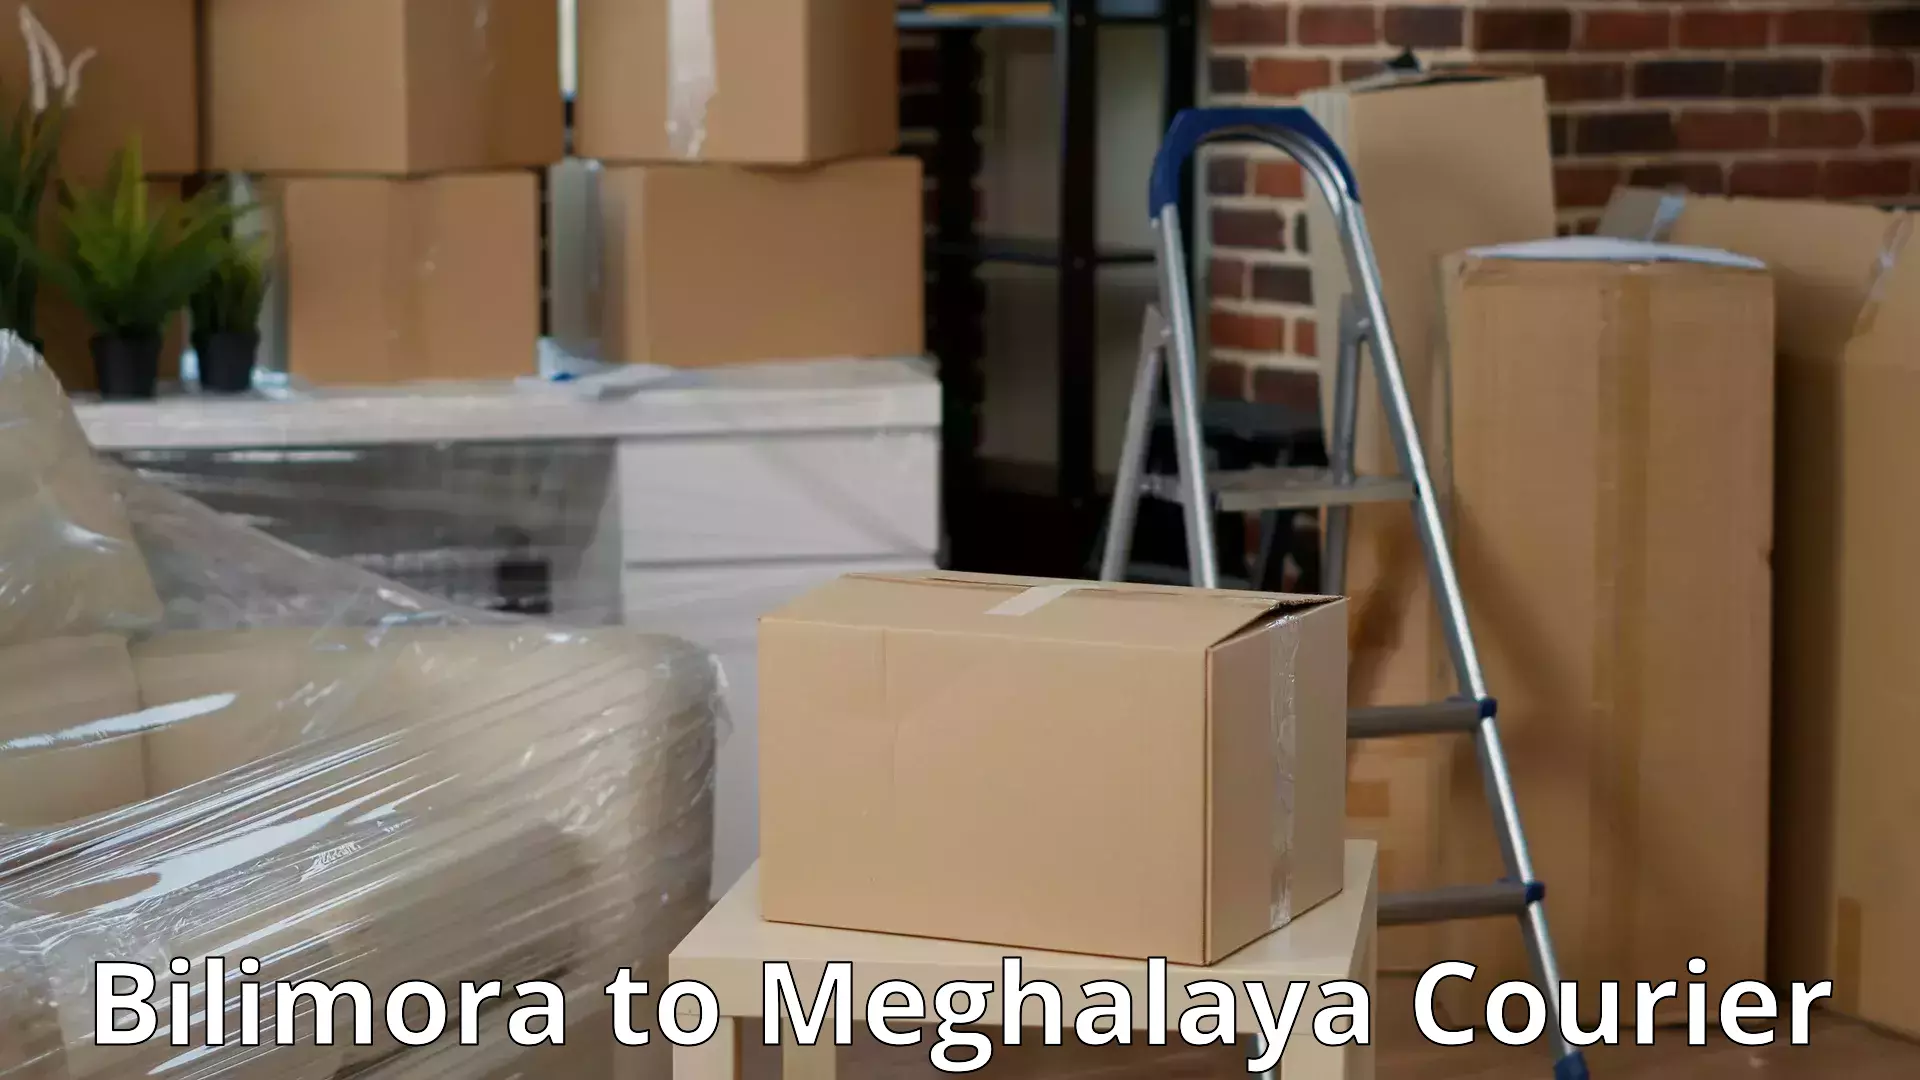 Furniture moving service Bilimora to Cherrapunji